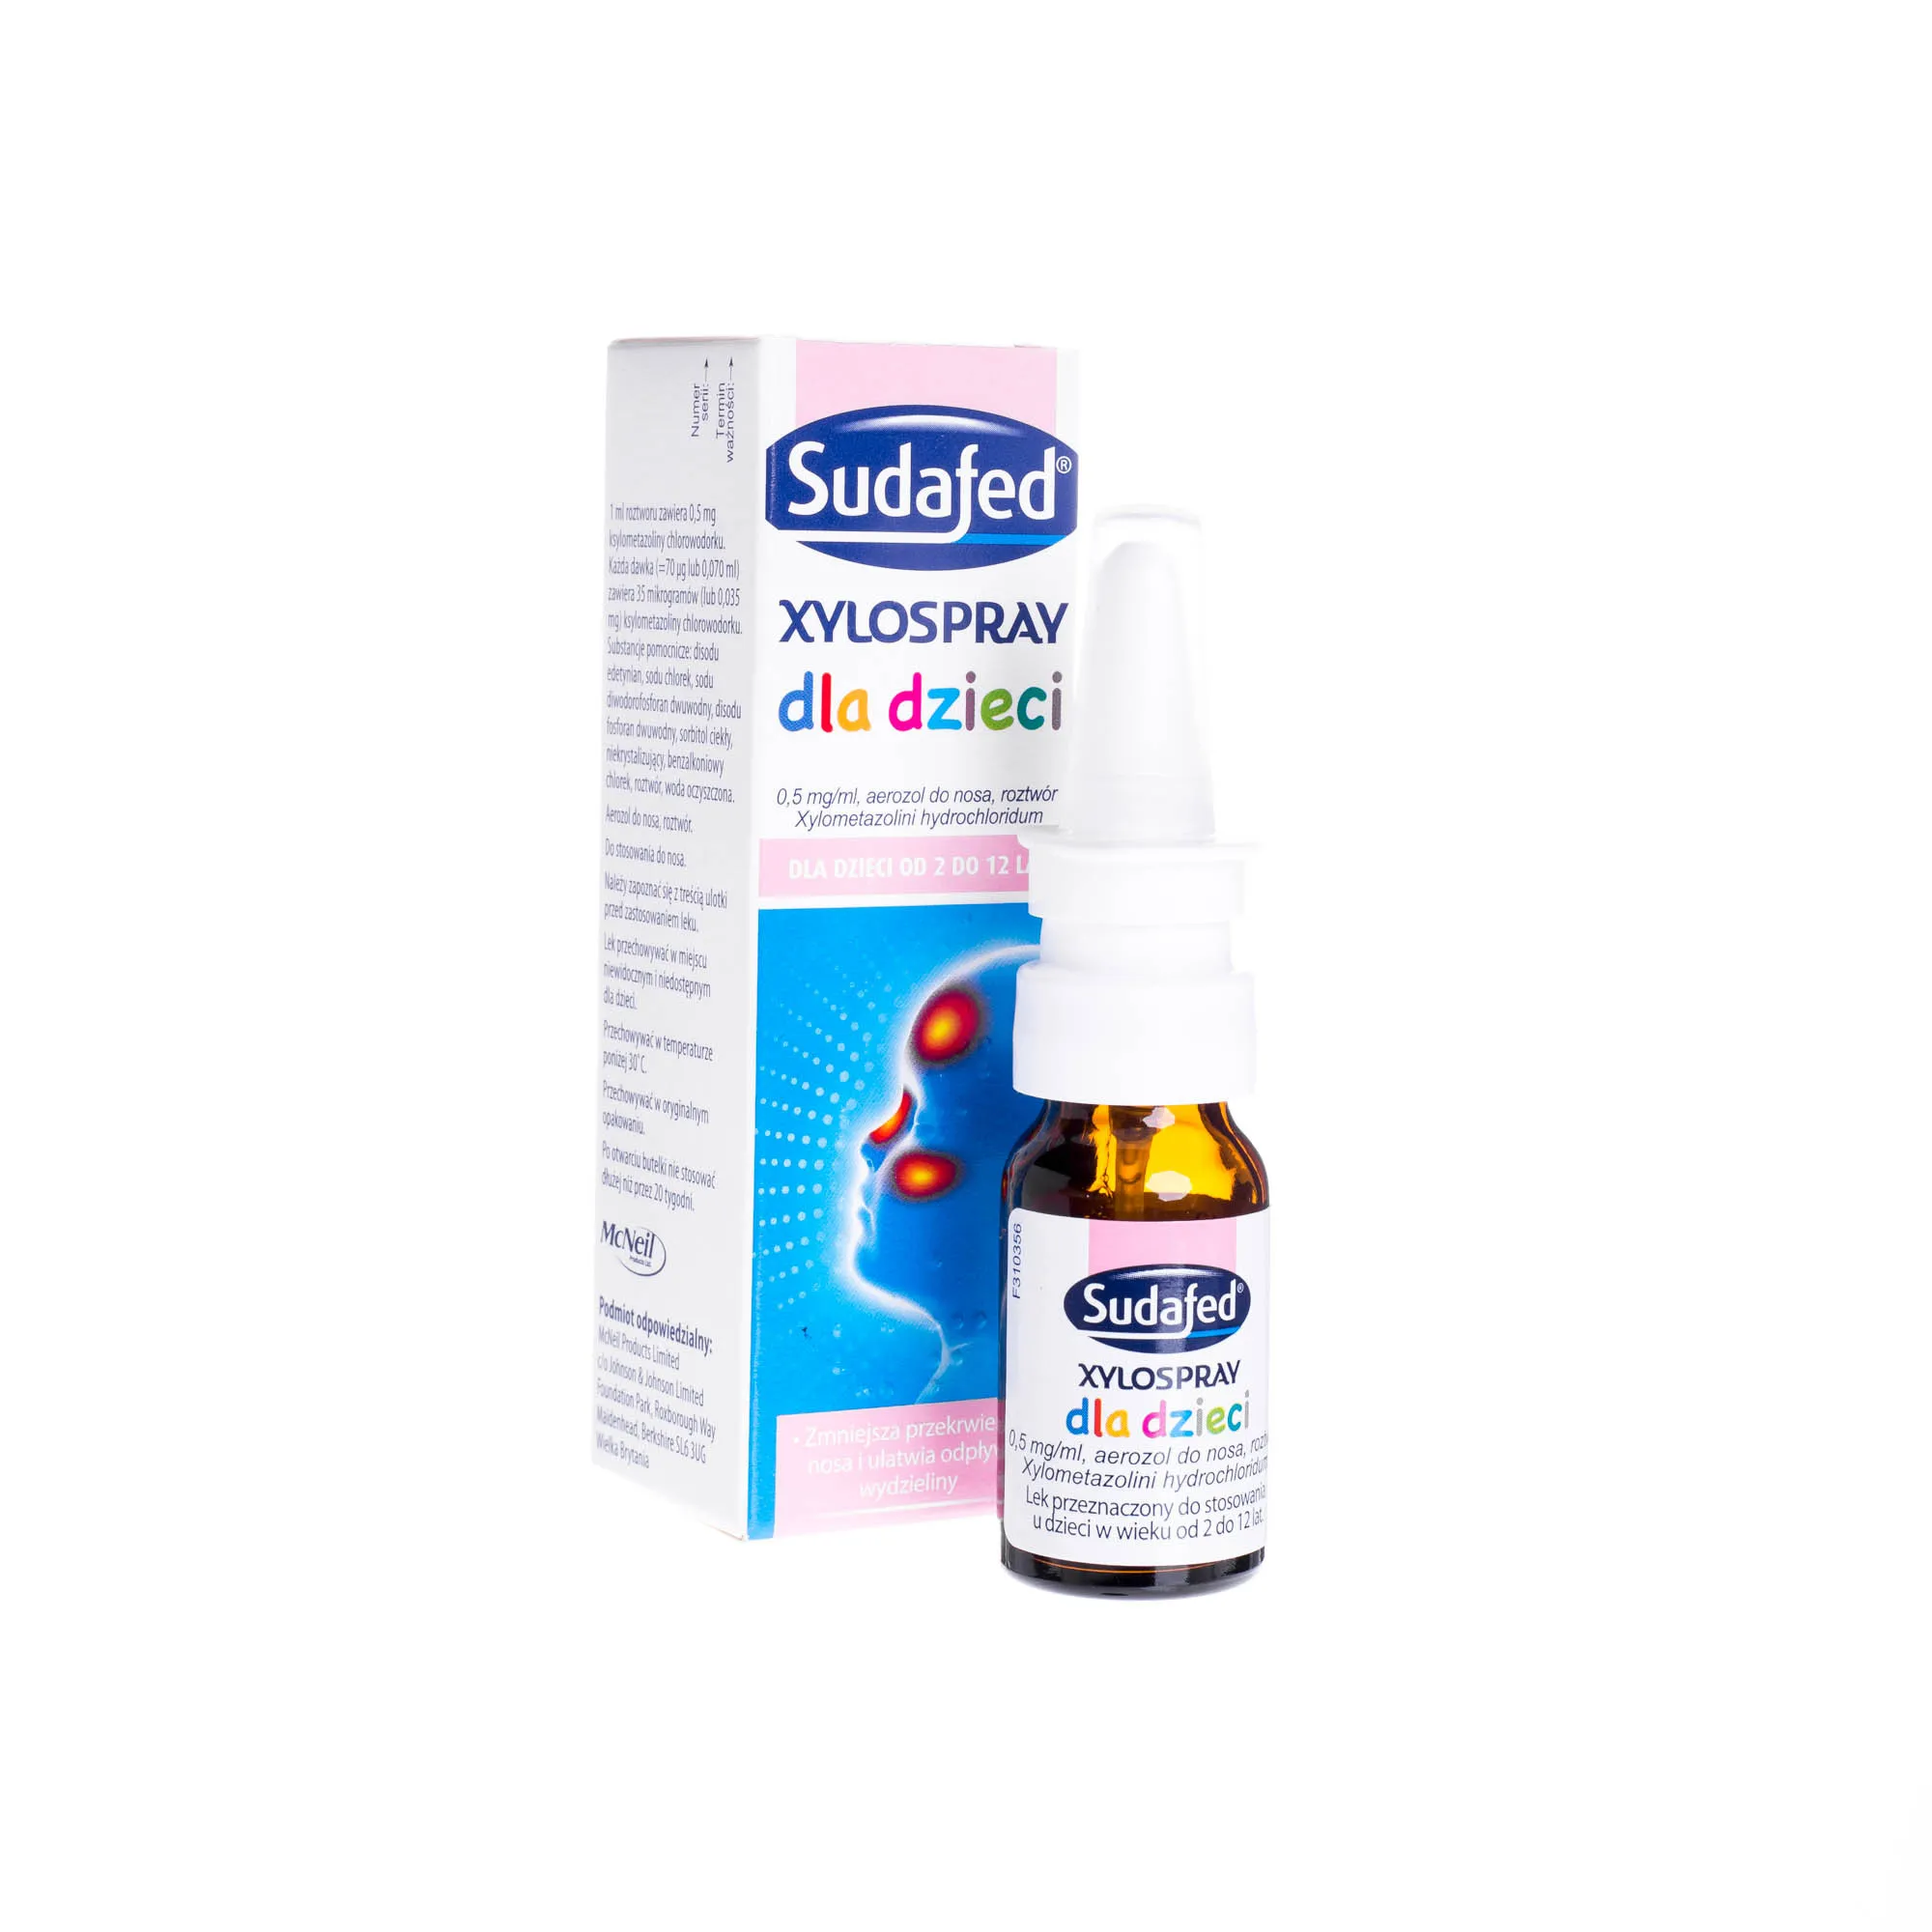 Sudafed Xylospray dla dzieci 0,5 mg/ml - lek zmniejszający przekrwienie nosa i ułatwiający odpływ wydzieliny